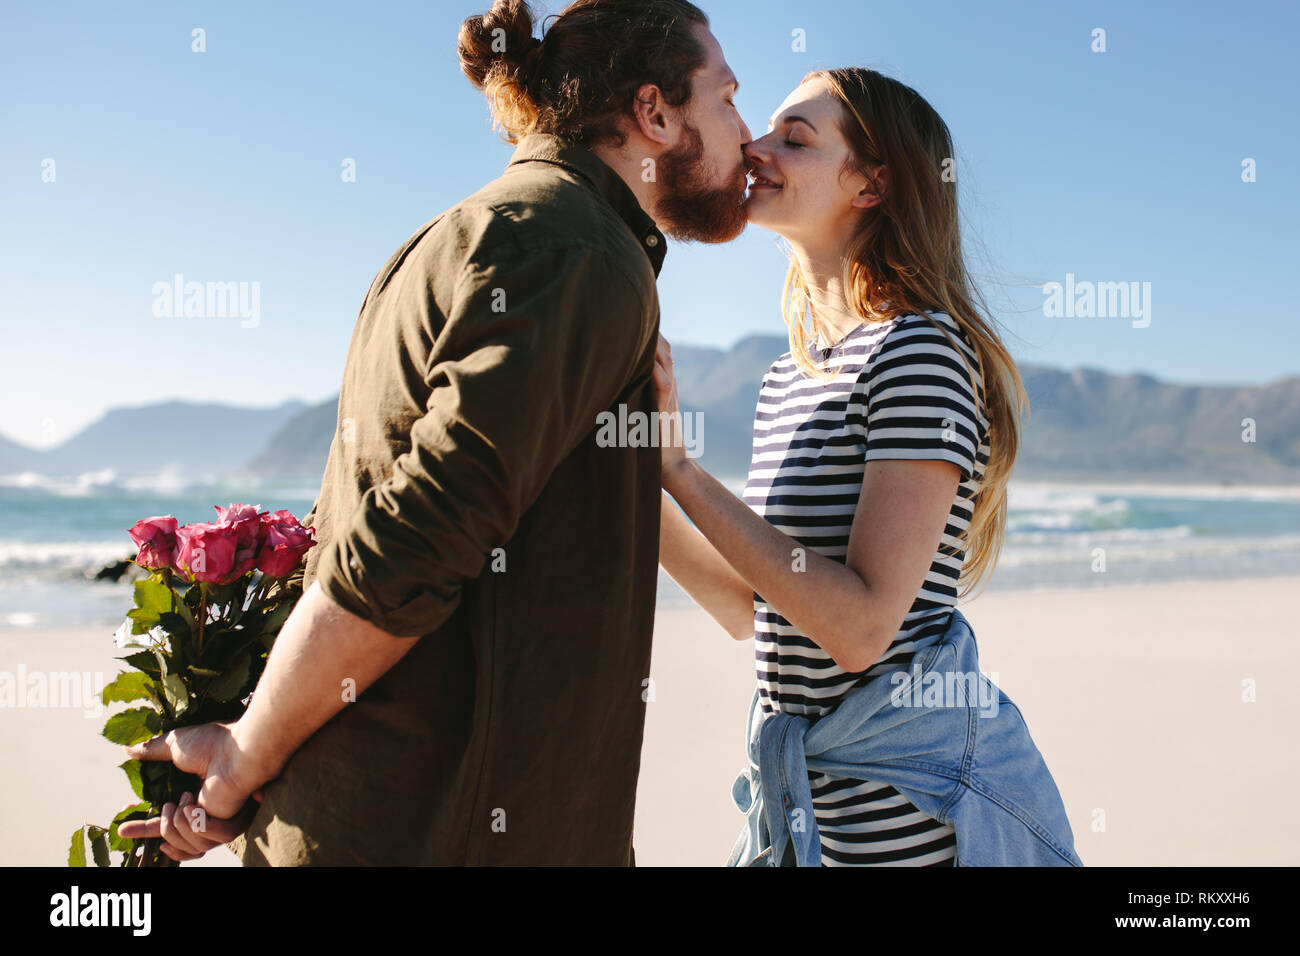 Uomo con fiori dietro e baciare la sua ragazza sulla spiaggia. Matura in amore baciare sulla spiaggia. Foto Stock